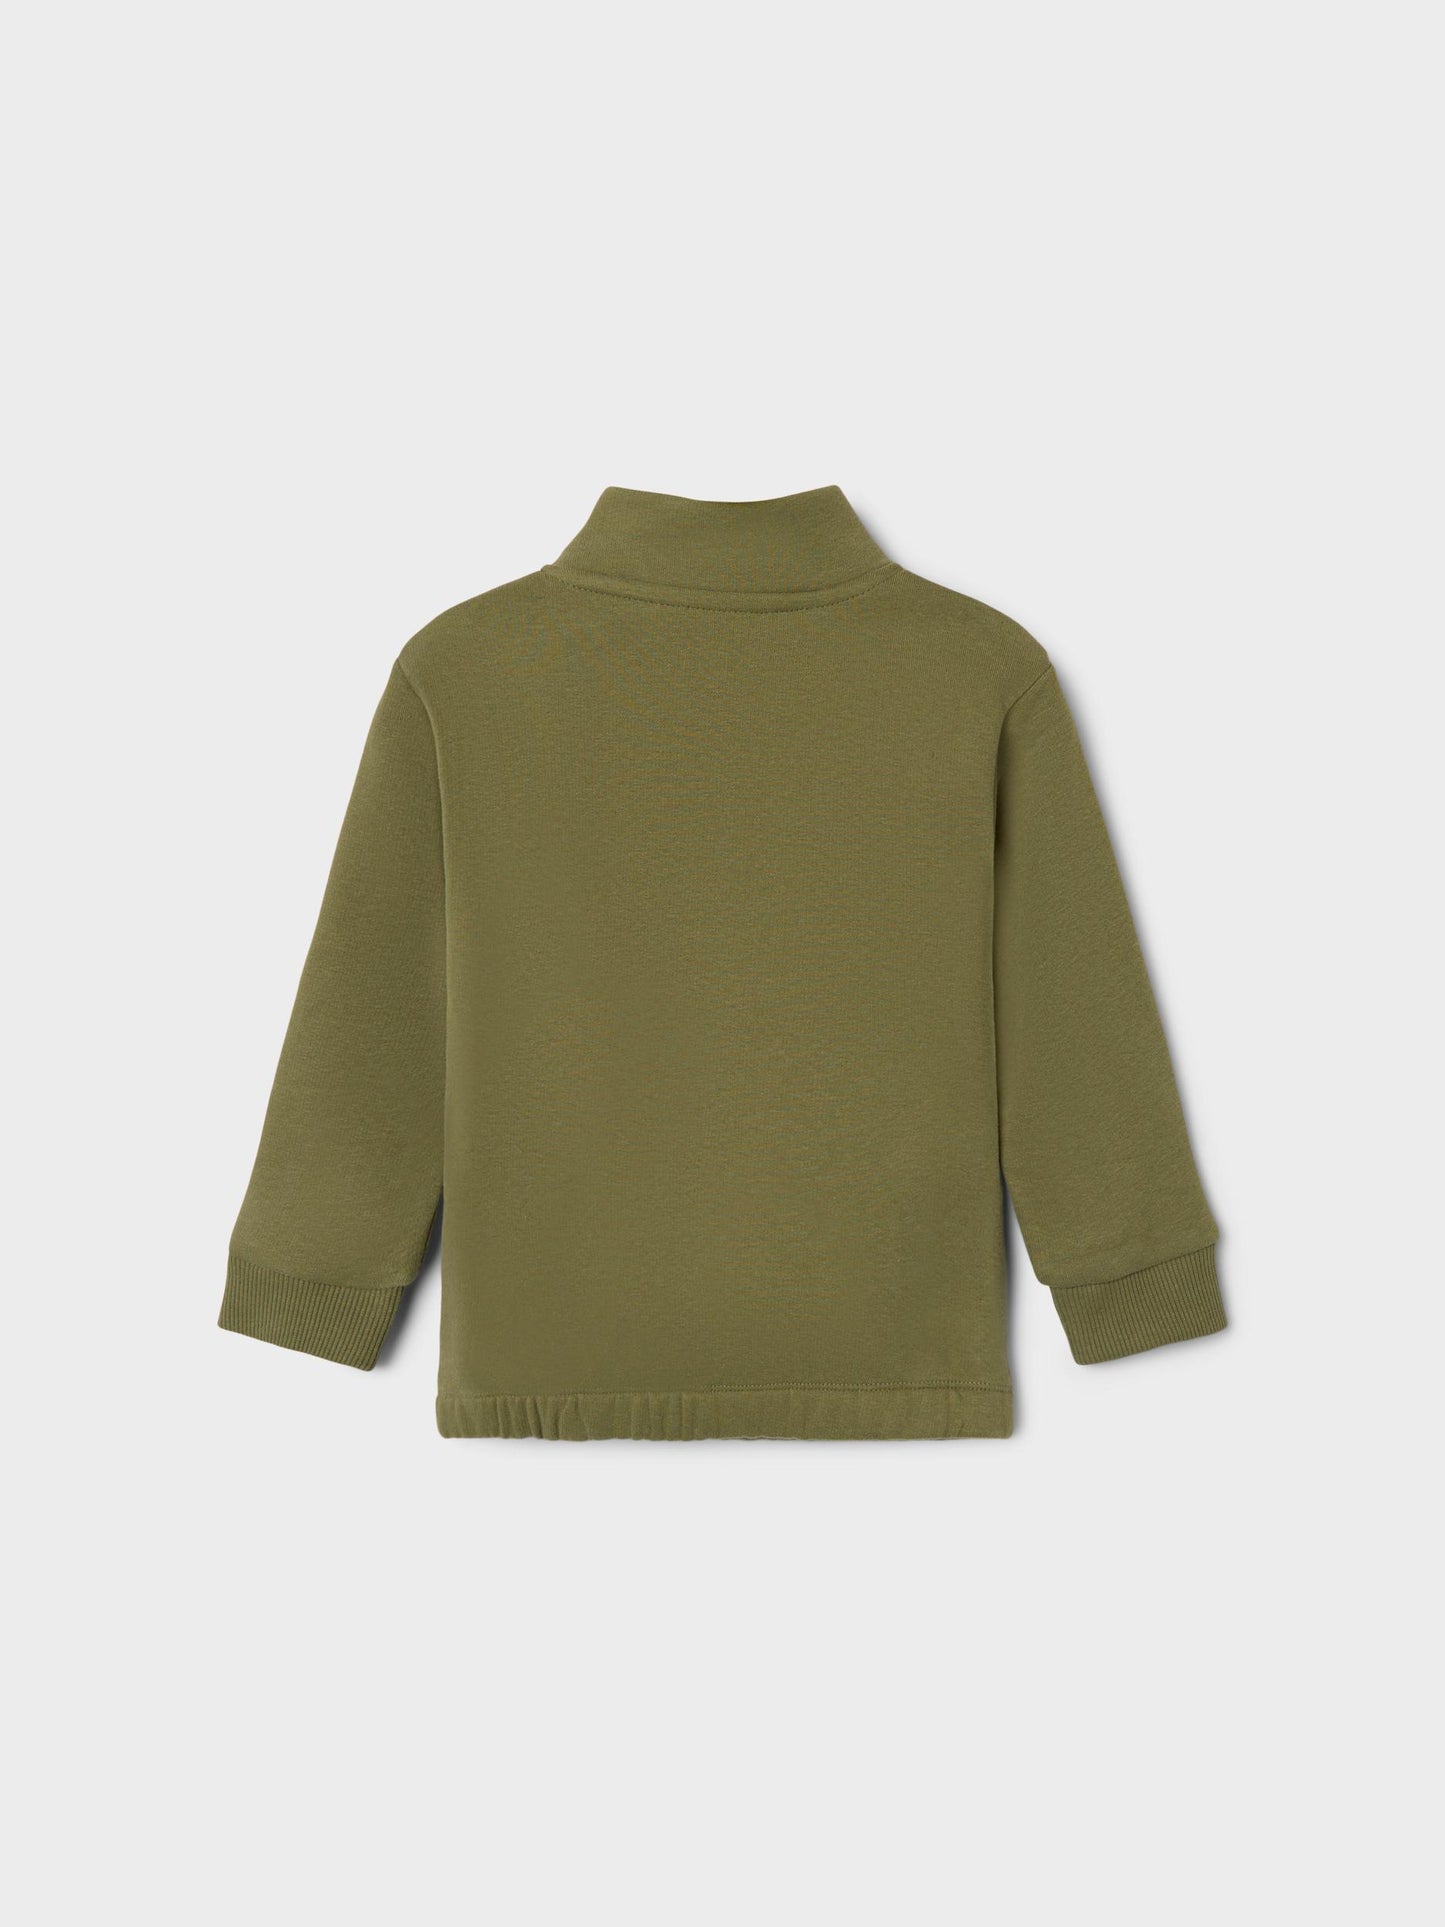 Lil atelier - sweater zip - loden green